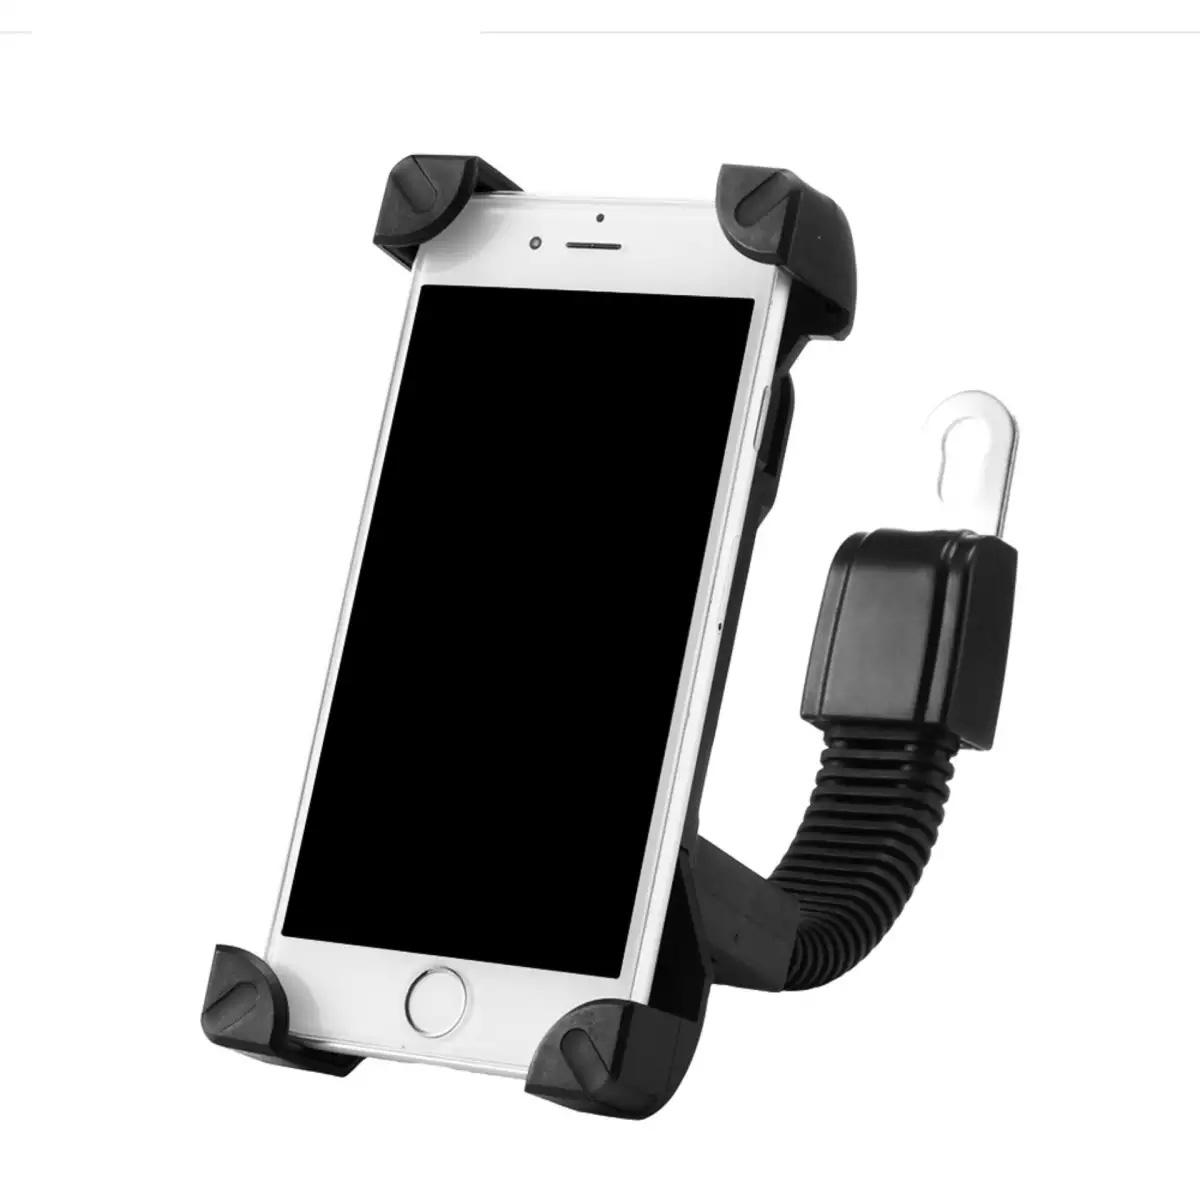 [[ส่งฟรี ]] KSC CAR HOLDER Motorbike Holder ที่ยึดมือถือ ที่วางโทรศัพท์มือถือกับ รถมอเตอร์ไซค์ รถจักรยาน รถจักรยานยนต์ ใช้ได้กับมือถือ 4 - 7 นิ้ว สีดำ